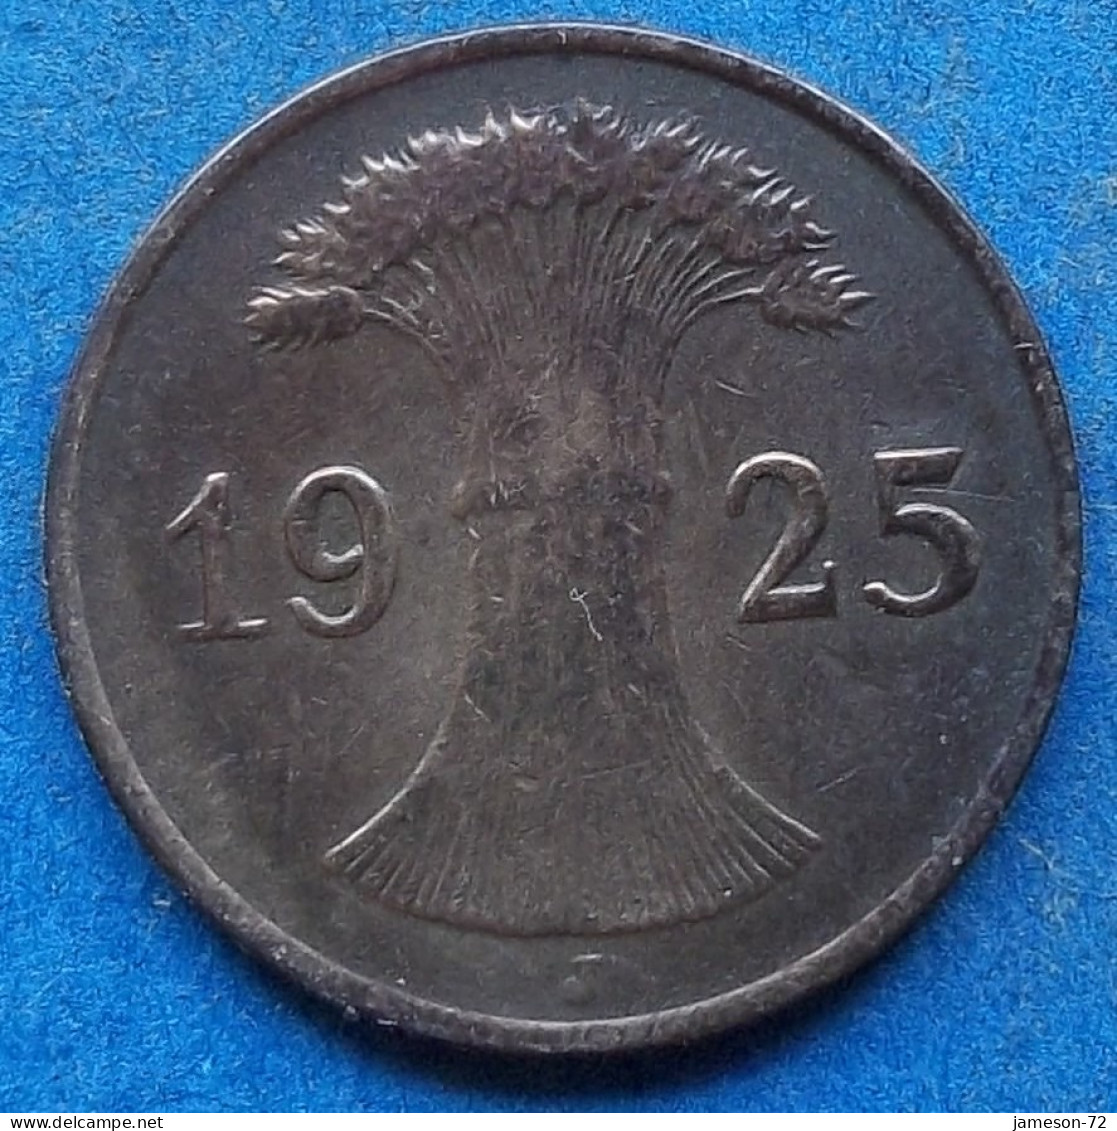 GERMANY - 1 Reichspfennig 1925 J KM# 37 Weimar Republic Reichsmark Coinage (1924-1938) - Edelweiss Coins - 1 Rentenpfennig & 1 Reichspfennig